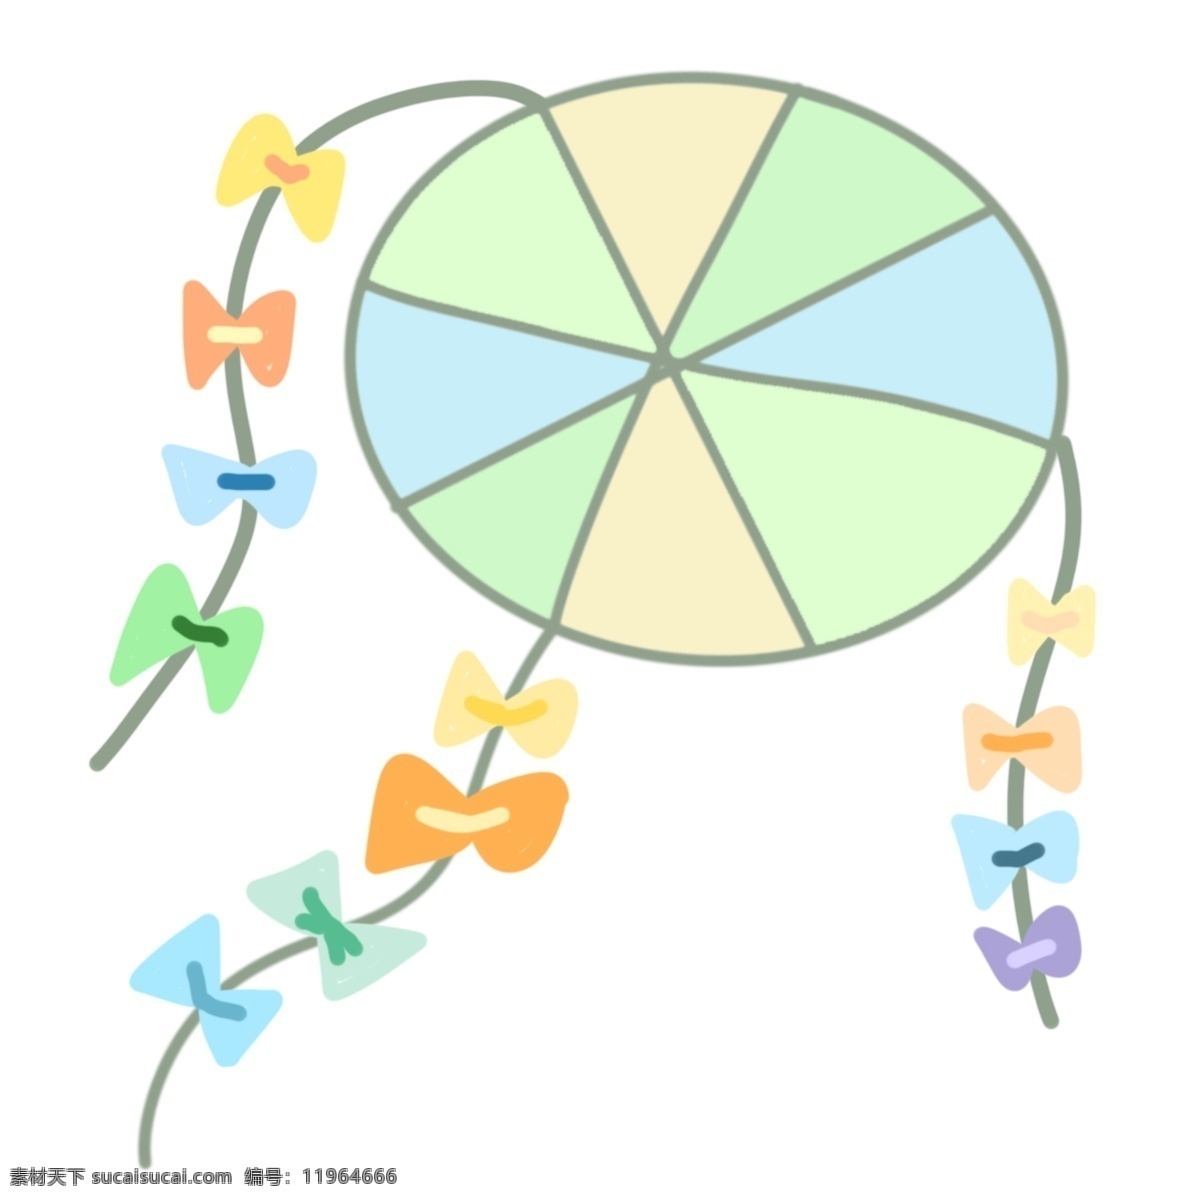 漂亮 彩色 风筝 插图 彩色风筝 蝴蝶结装饰 彩色风筝插图 橙色 蓝色 绿色 黄色 漂亮的风筝 风筝插图